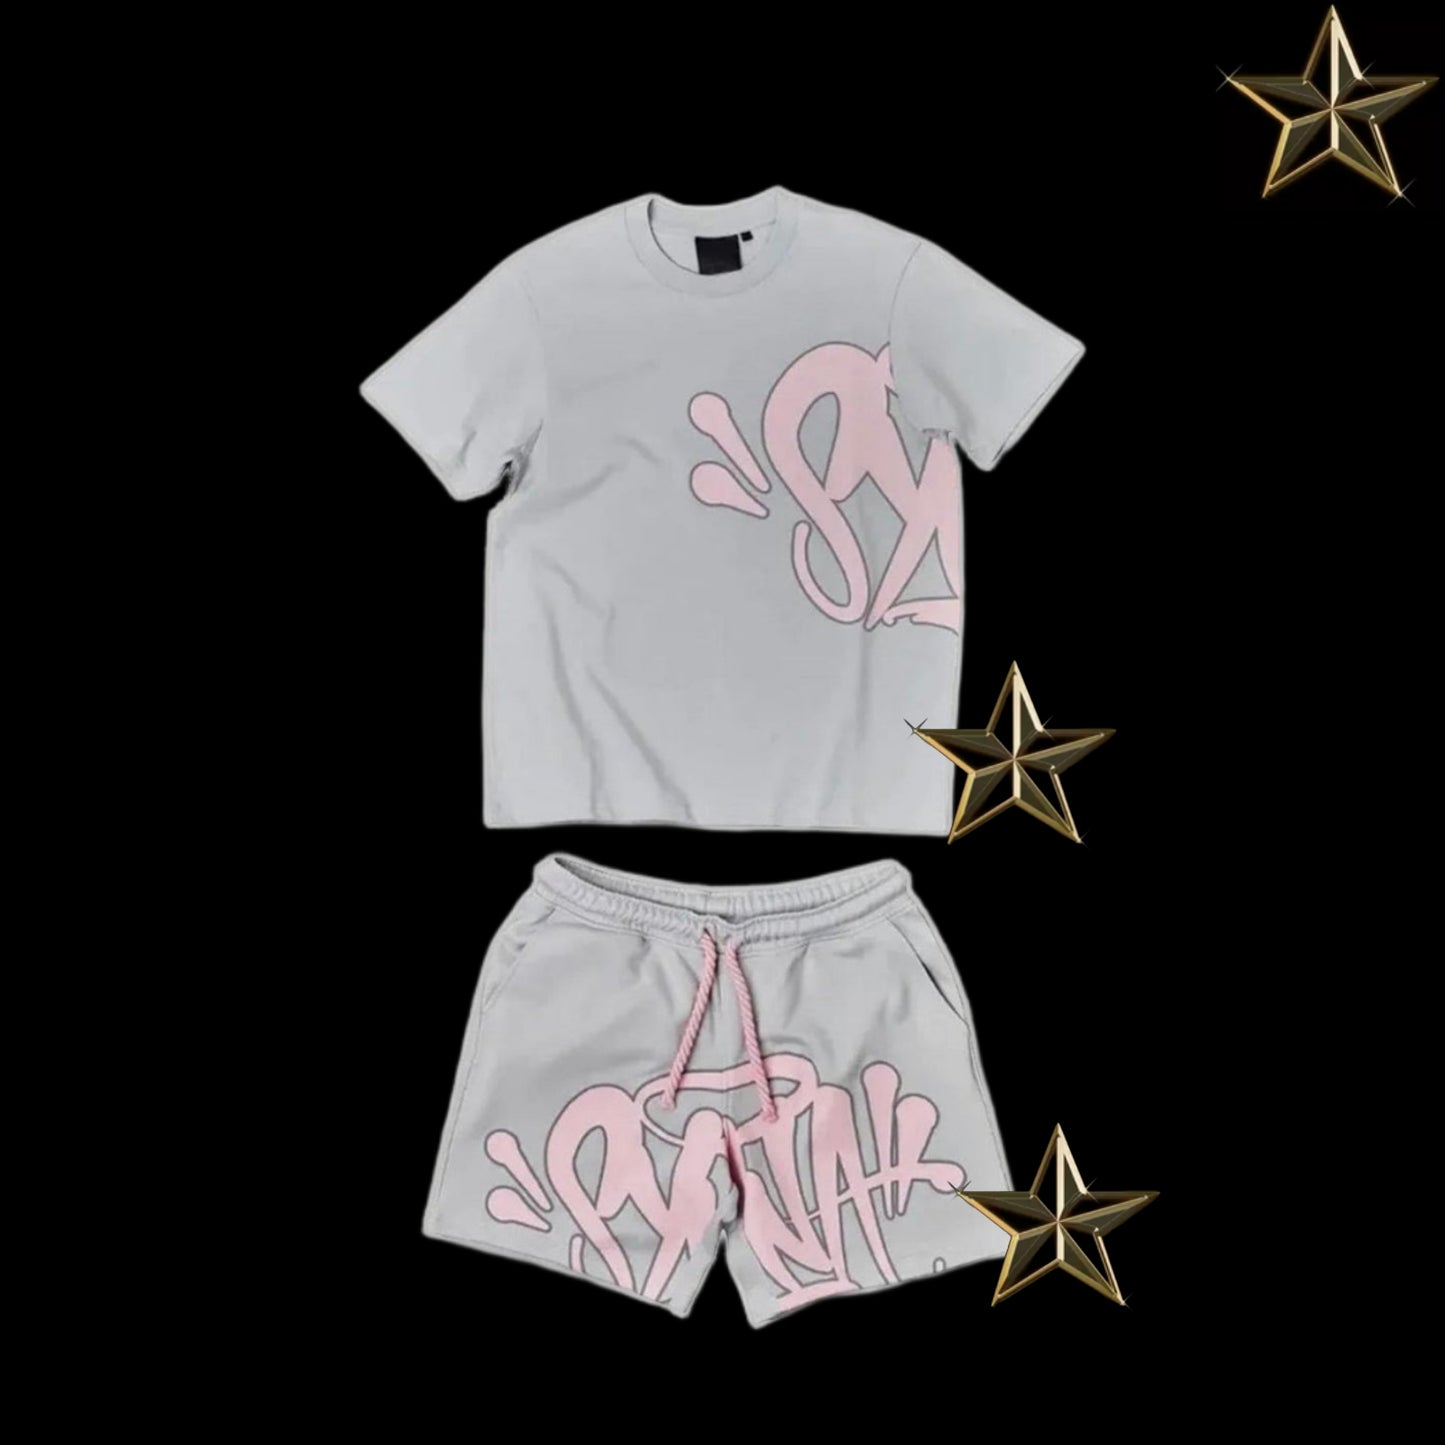 Syna World T shirt and Shorts Set - Grey / Pink